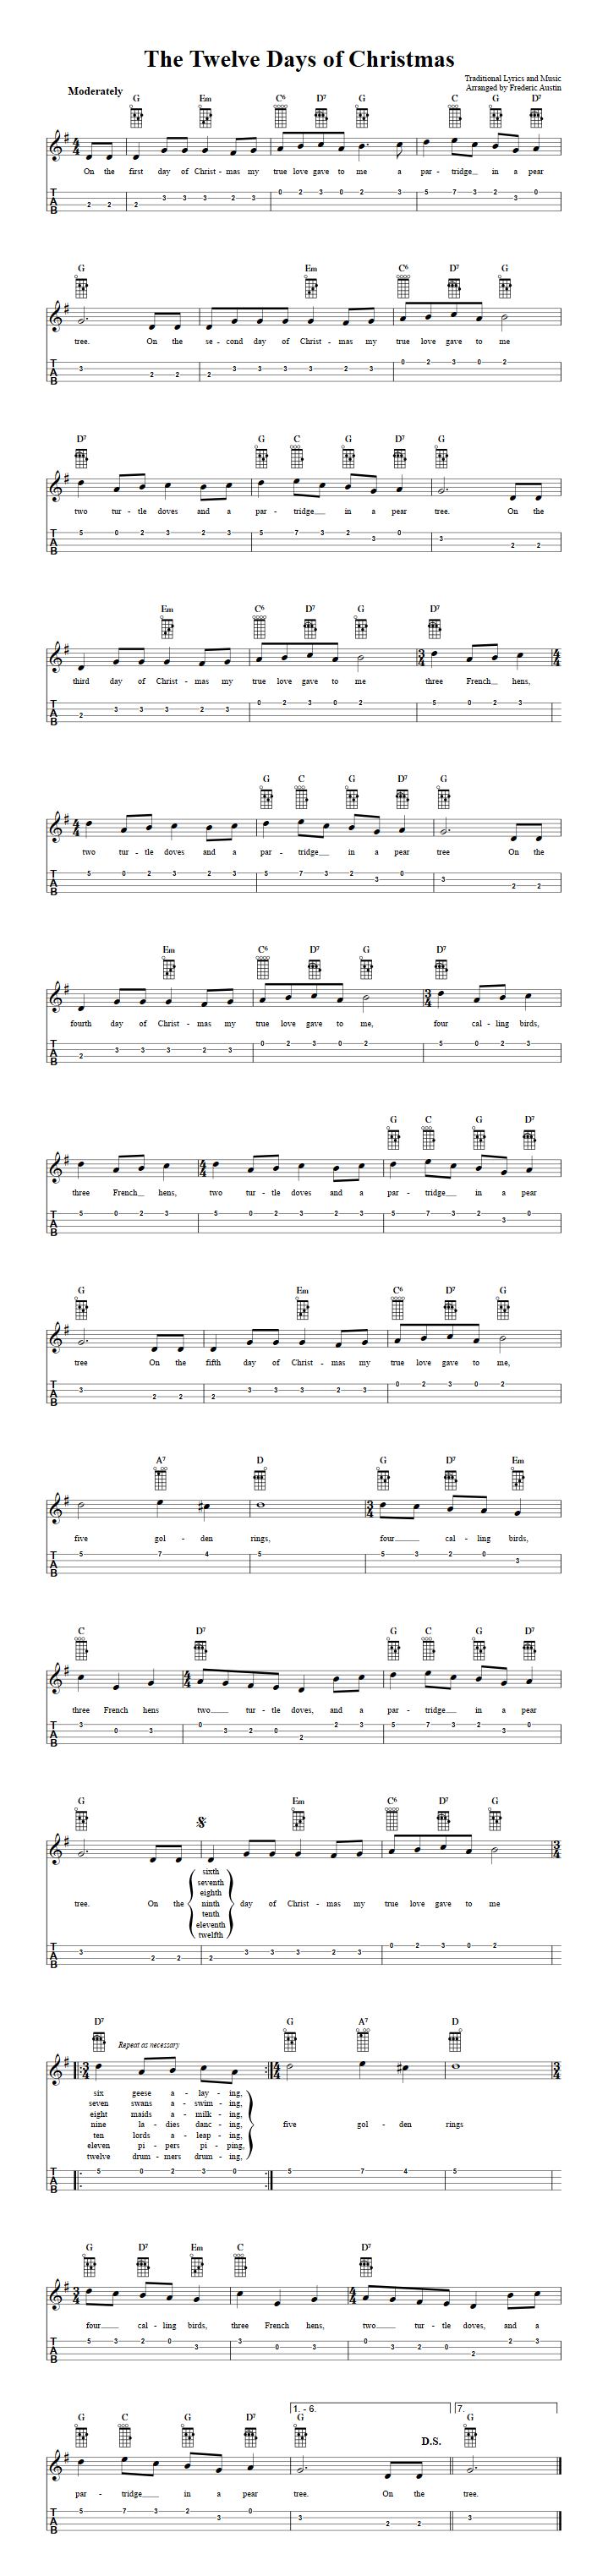 The Twelve Days of Christmas: Chords, Sheet Music and Tab for Ukulele with Lyrics